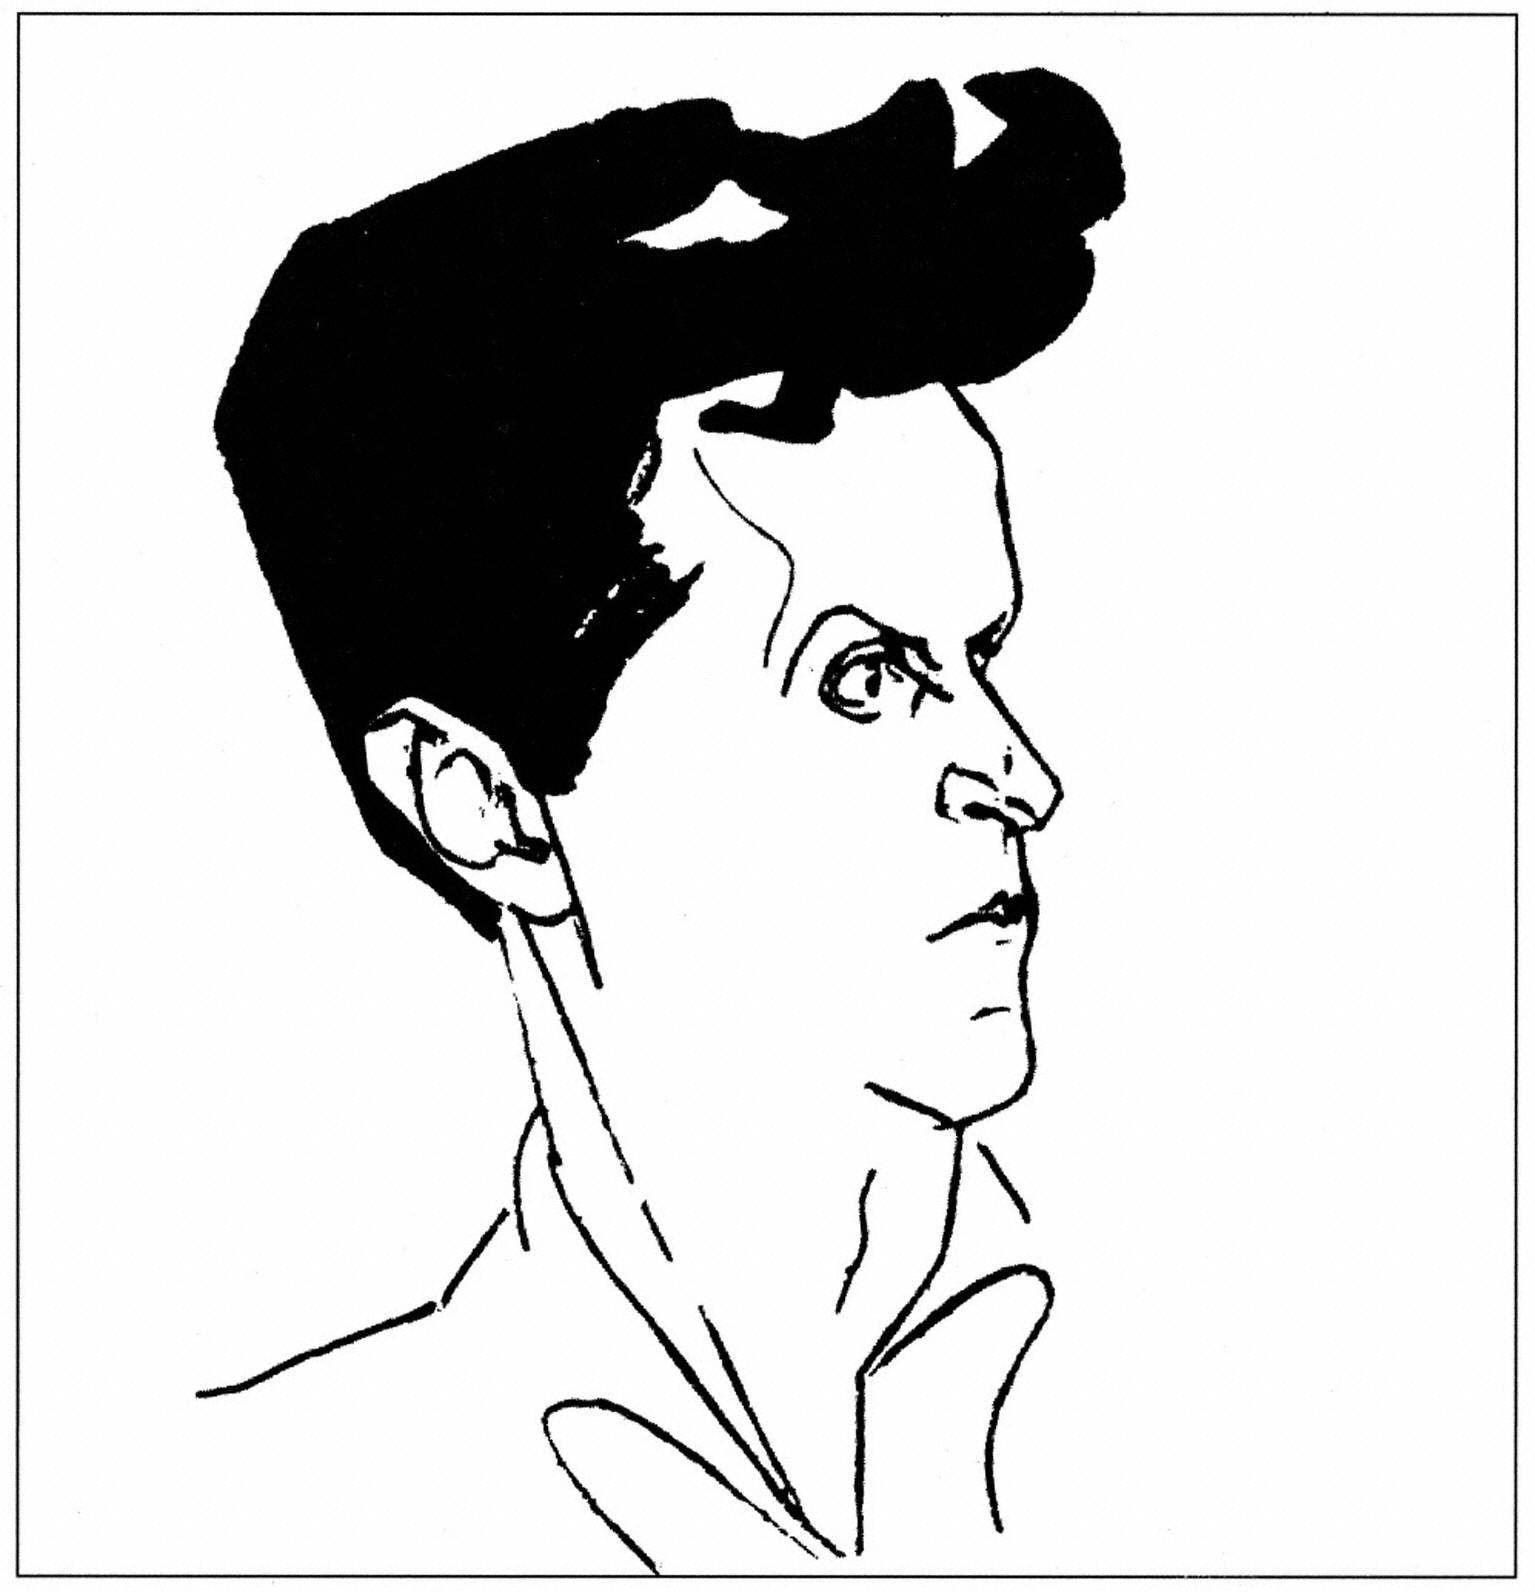 Filósofo británico de origen austriaco Ludwig Wittgenstein, dibujo de Hans Pfannmuller.